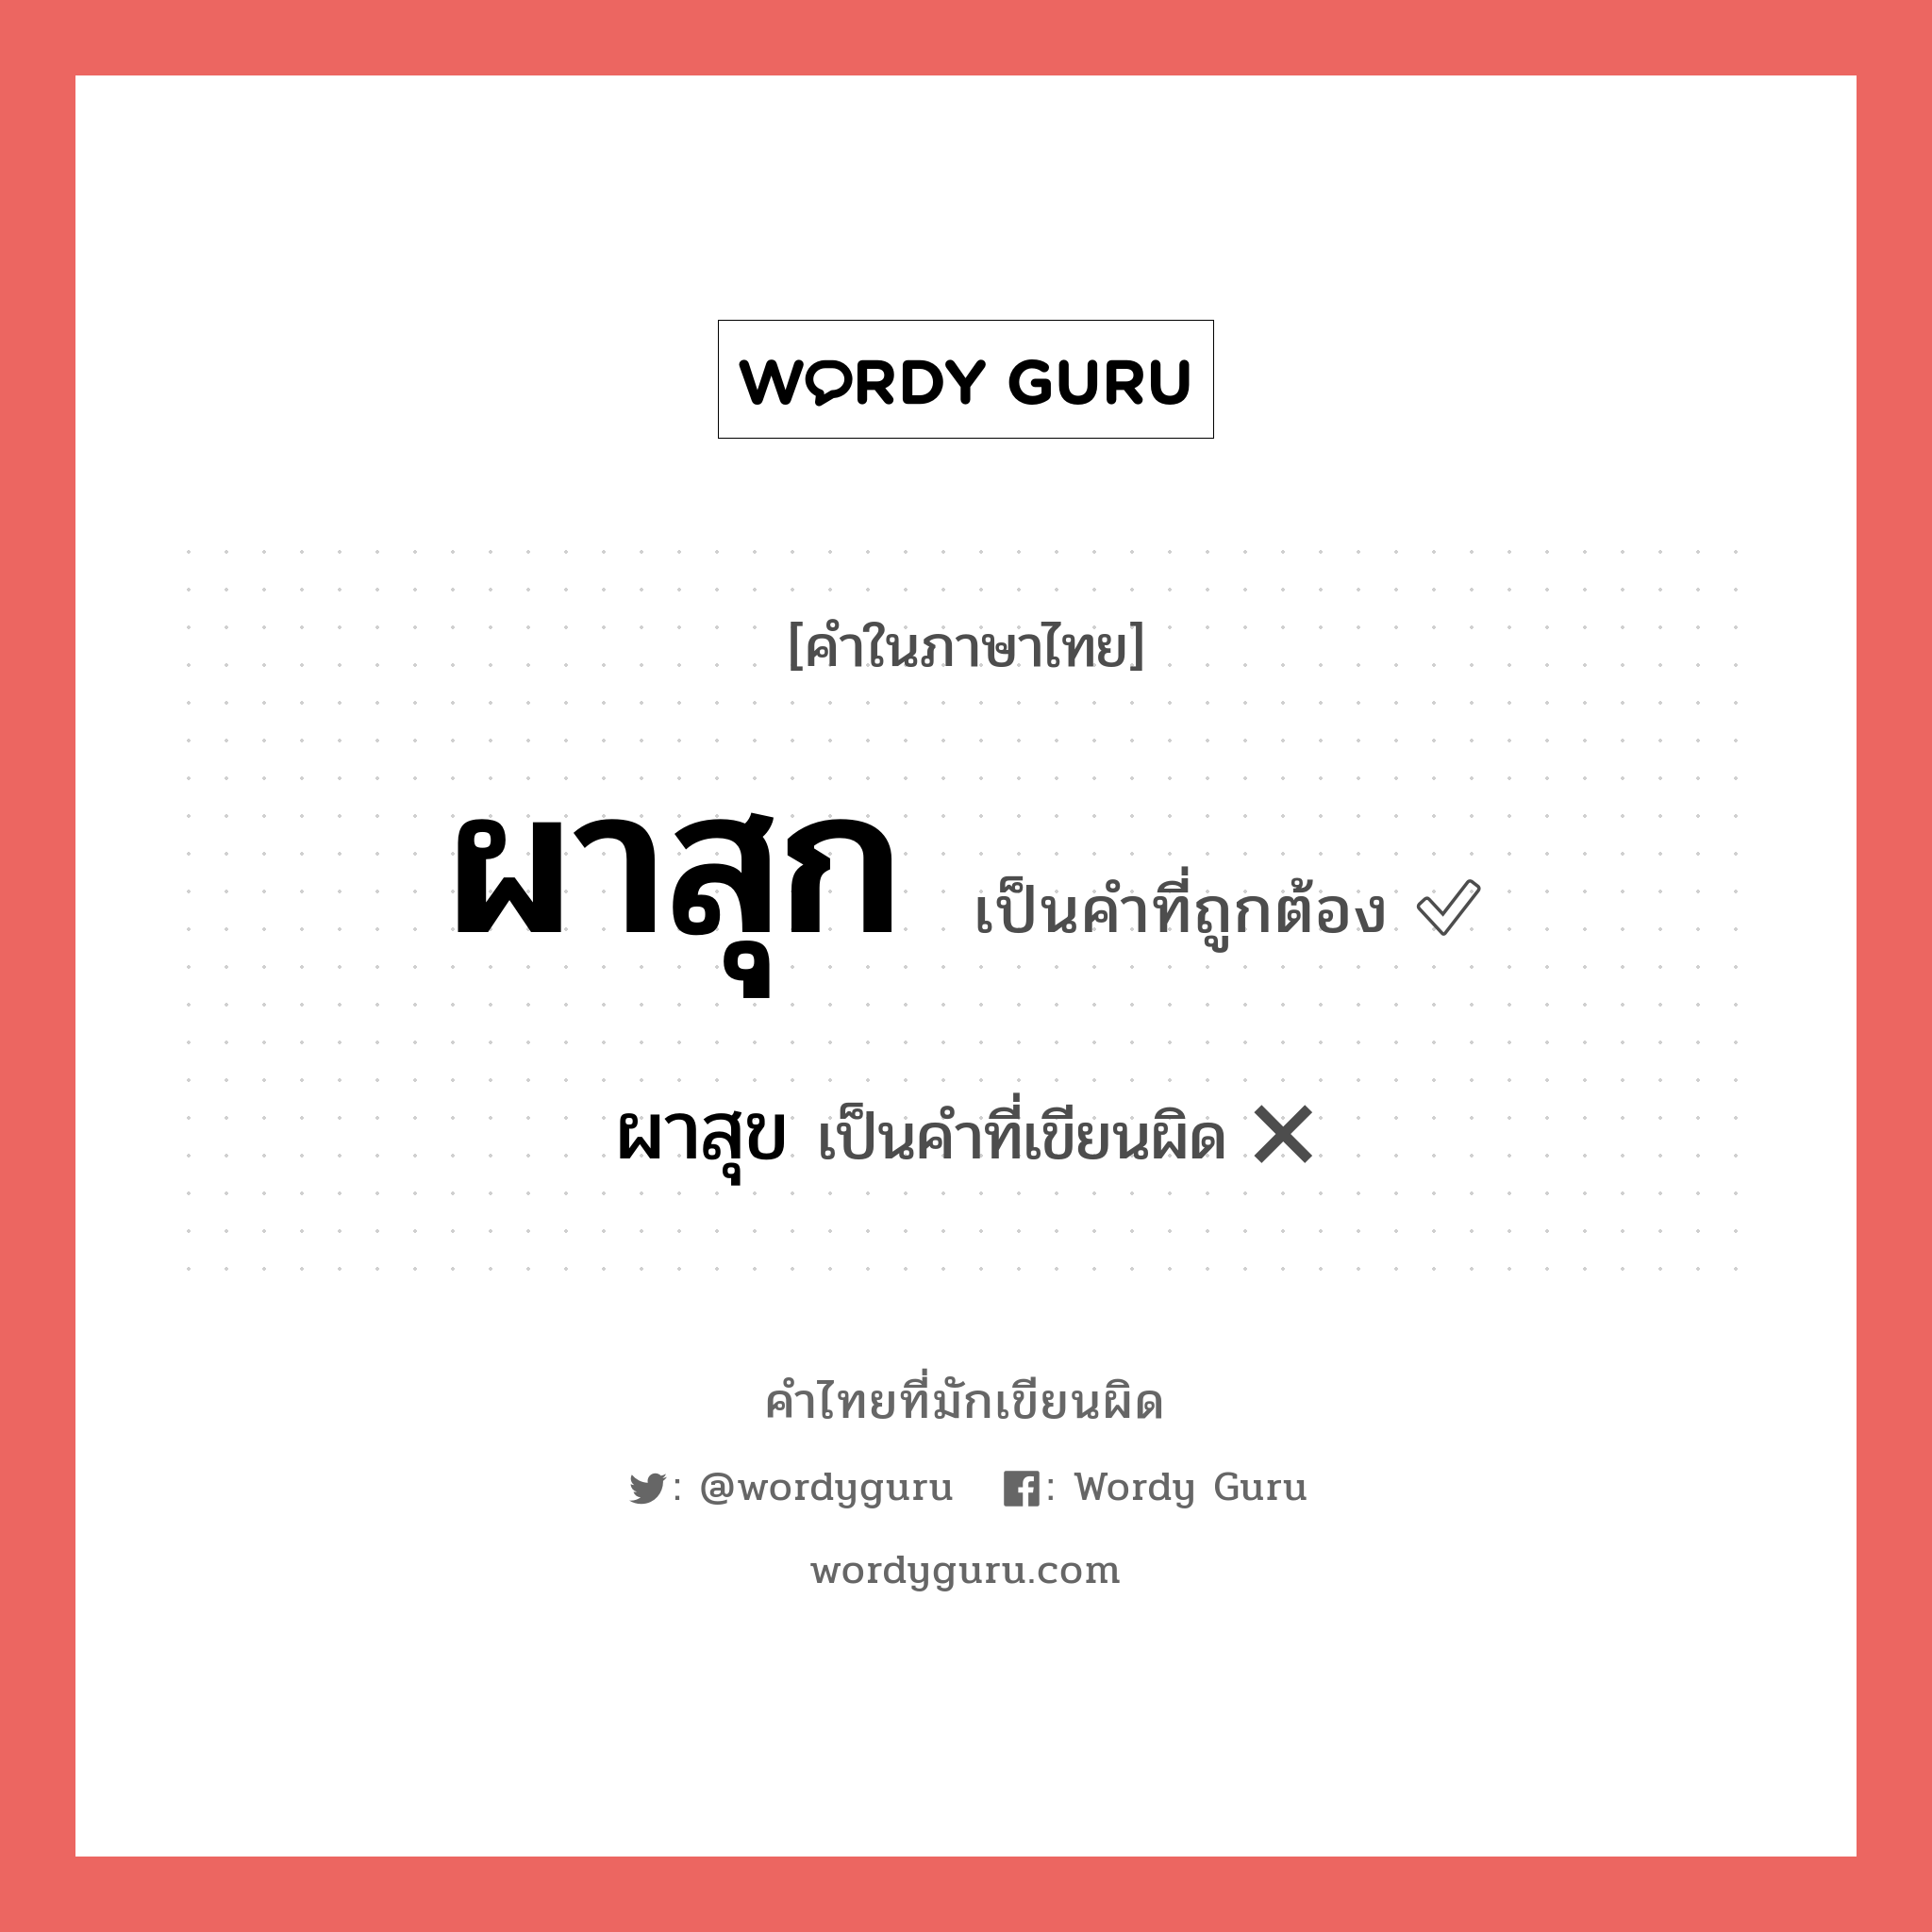 ผาสุข หรือ ผาสุก คำไหนเขียนถูก?, คำในภาษาไทยที่มักเขียนผิด ผาสุข คำที่ผิด ❌ ผาสุก